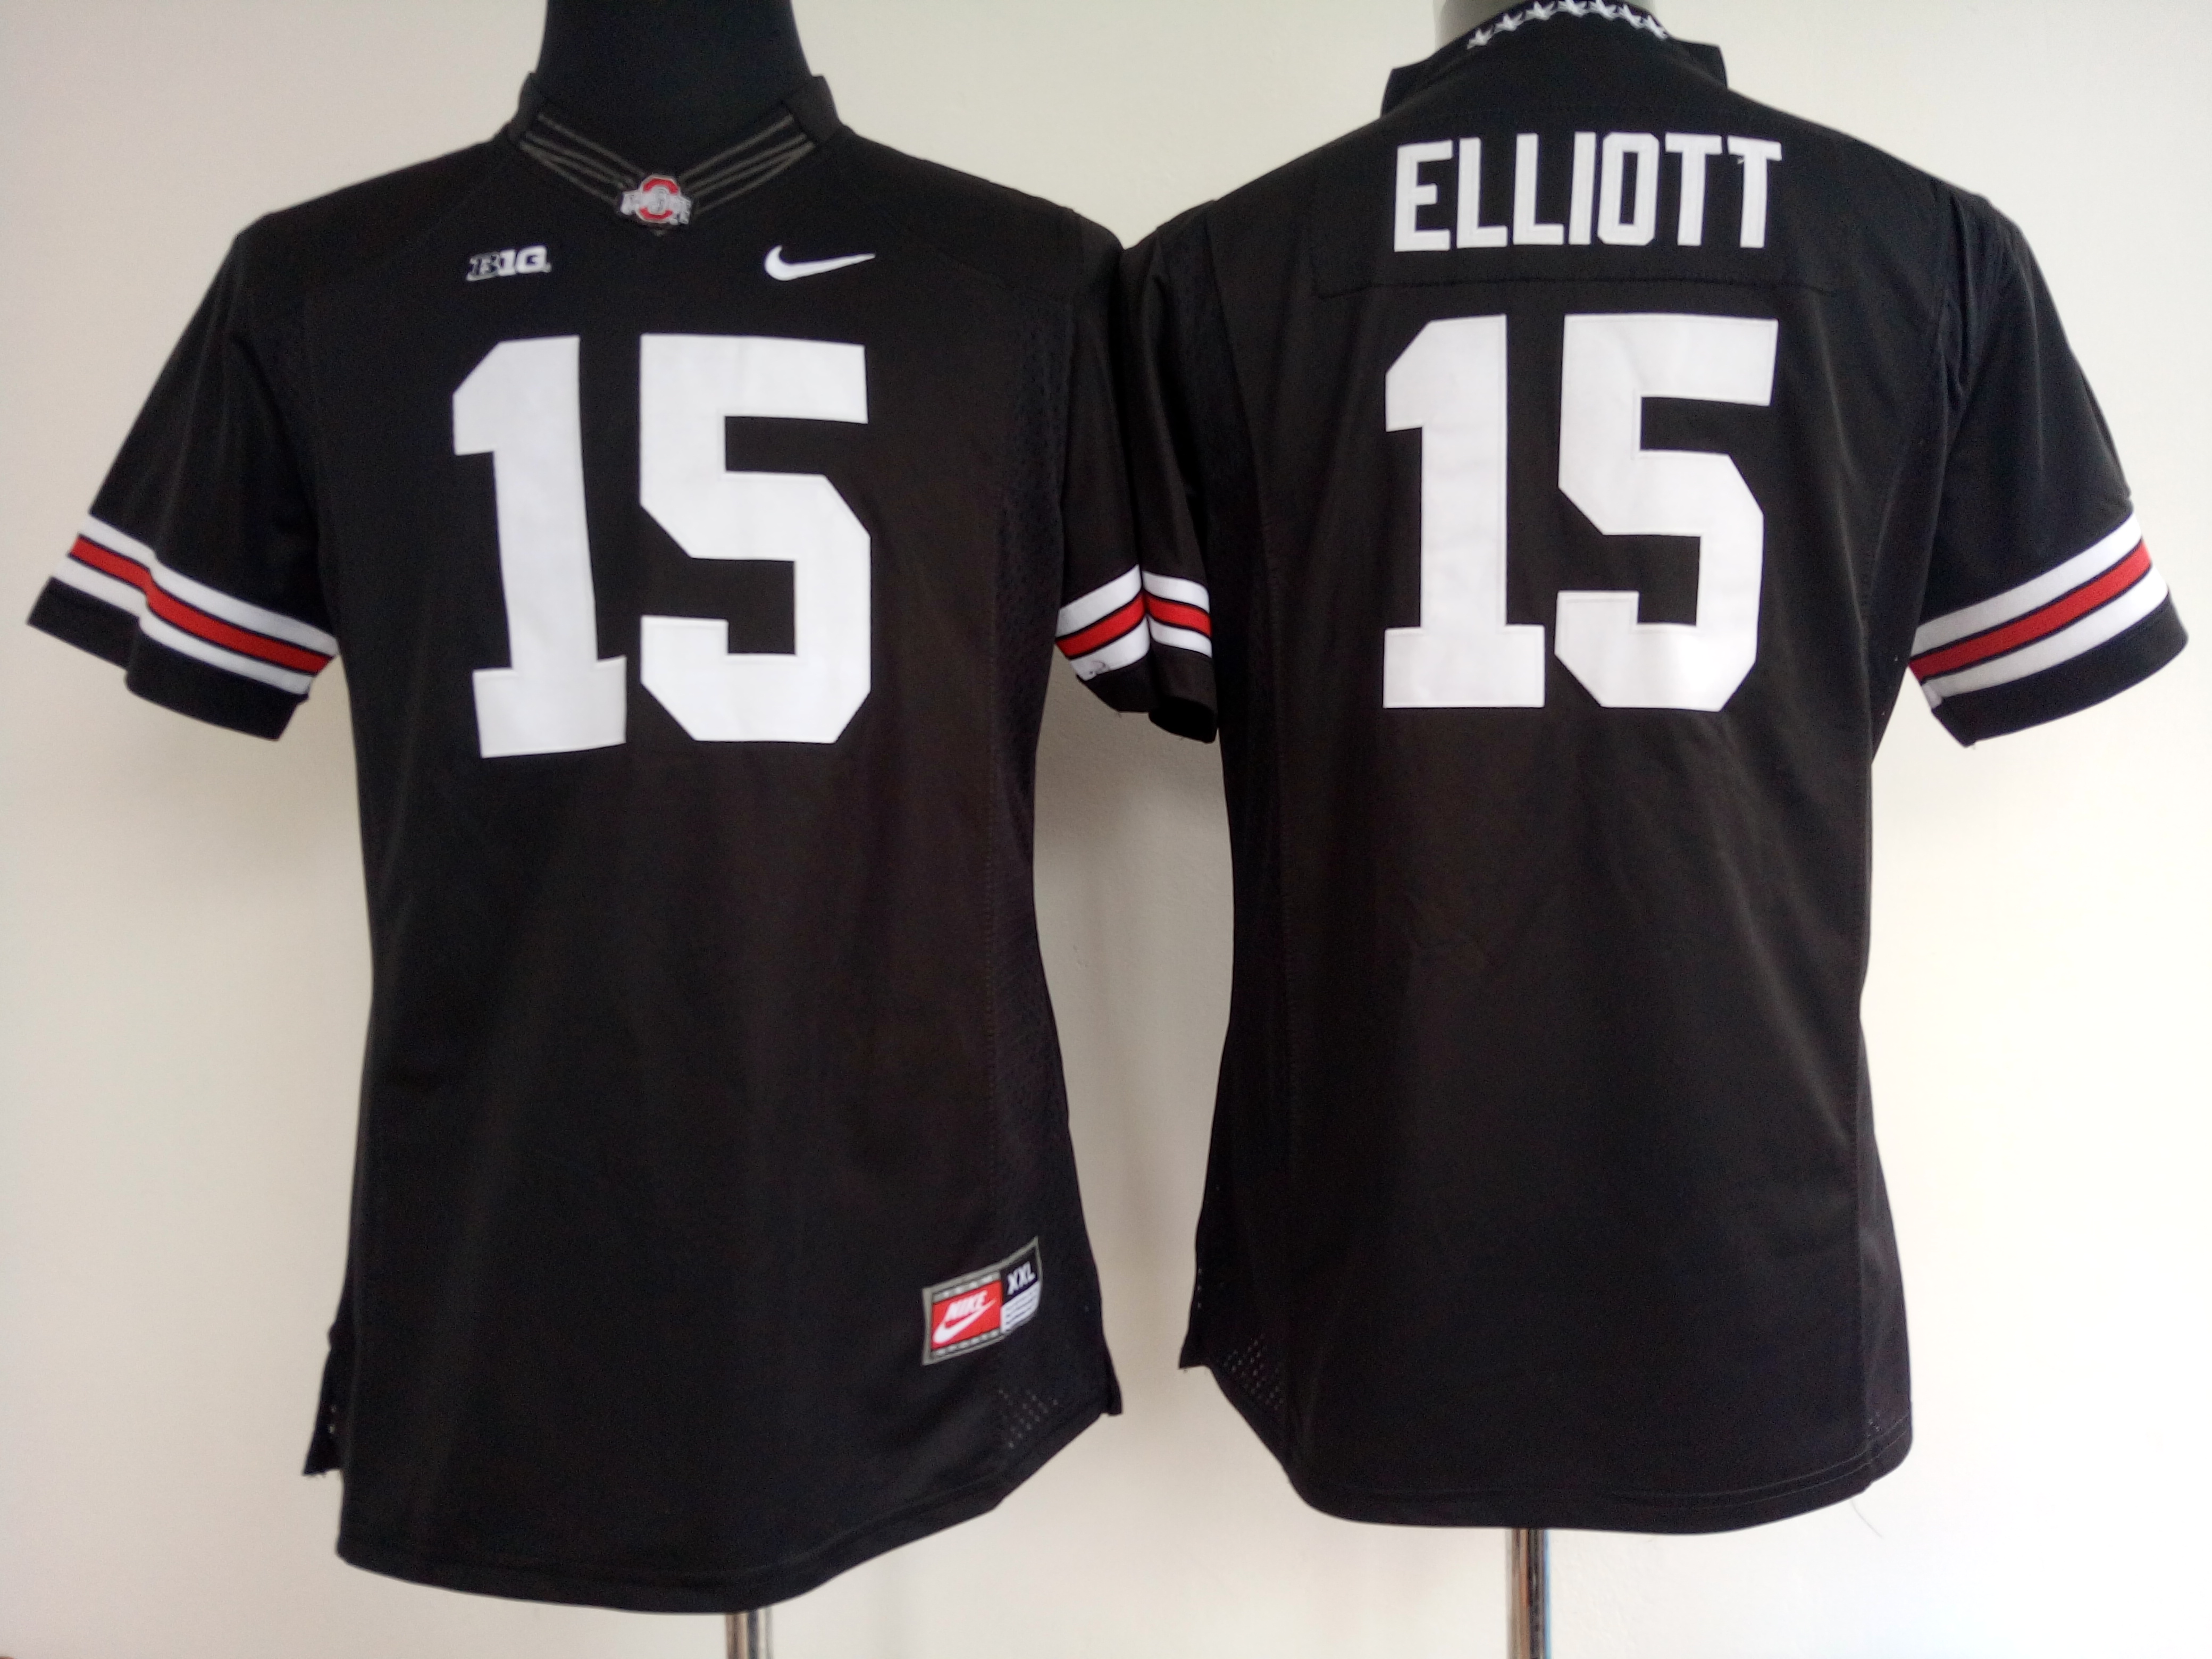 NCAA Womens Ohio State Buckeyes Black 15 Elliott jerseys